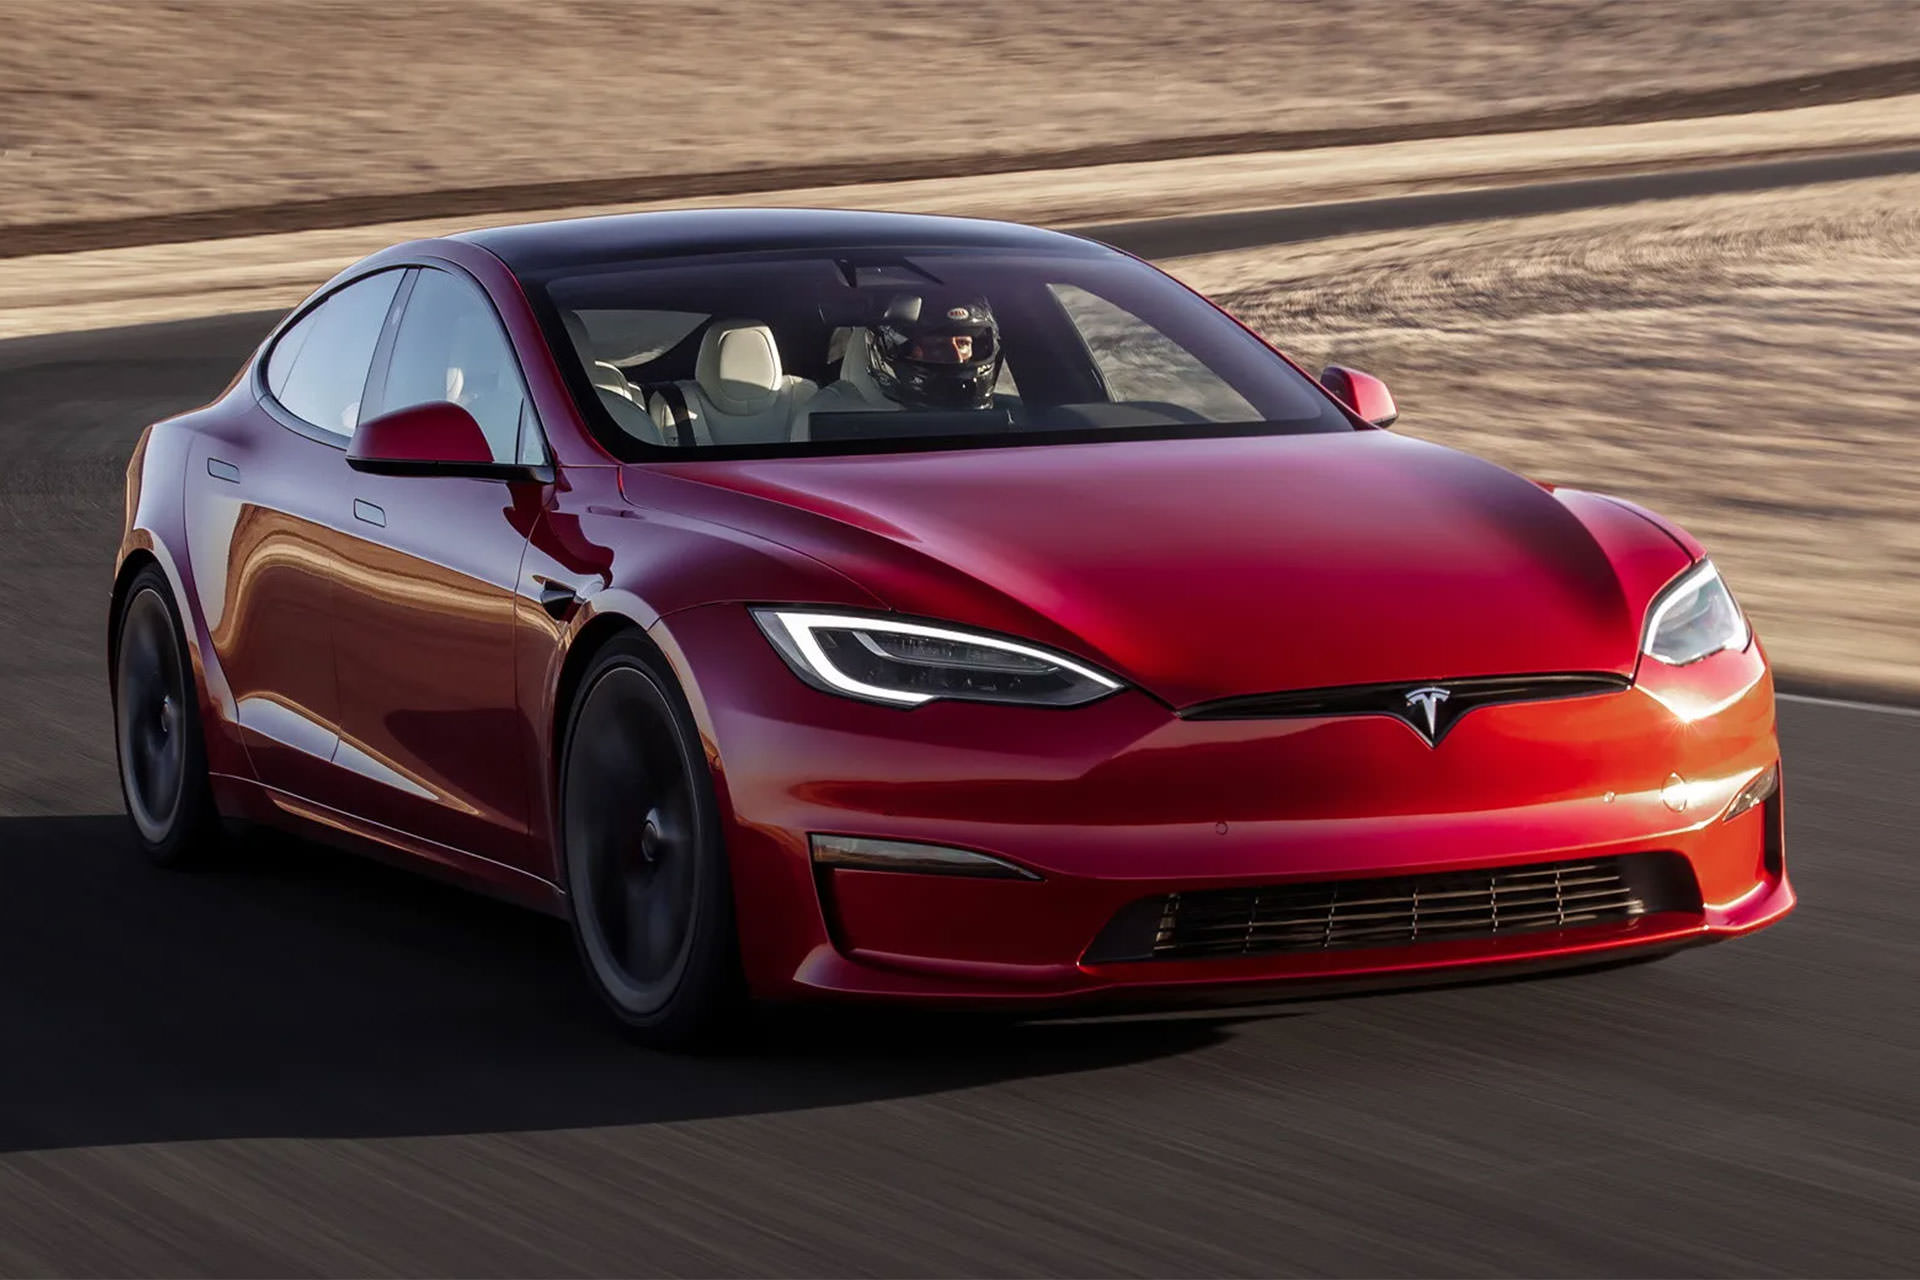 خودروی الکتریکی تسلا مدل اس پلید / Tesla Model S Plaid قرمز رنگ